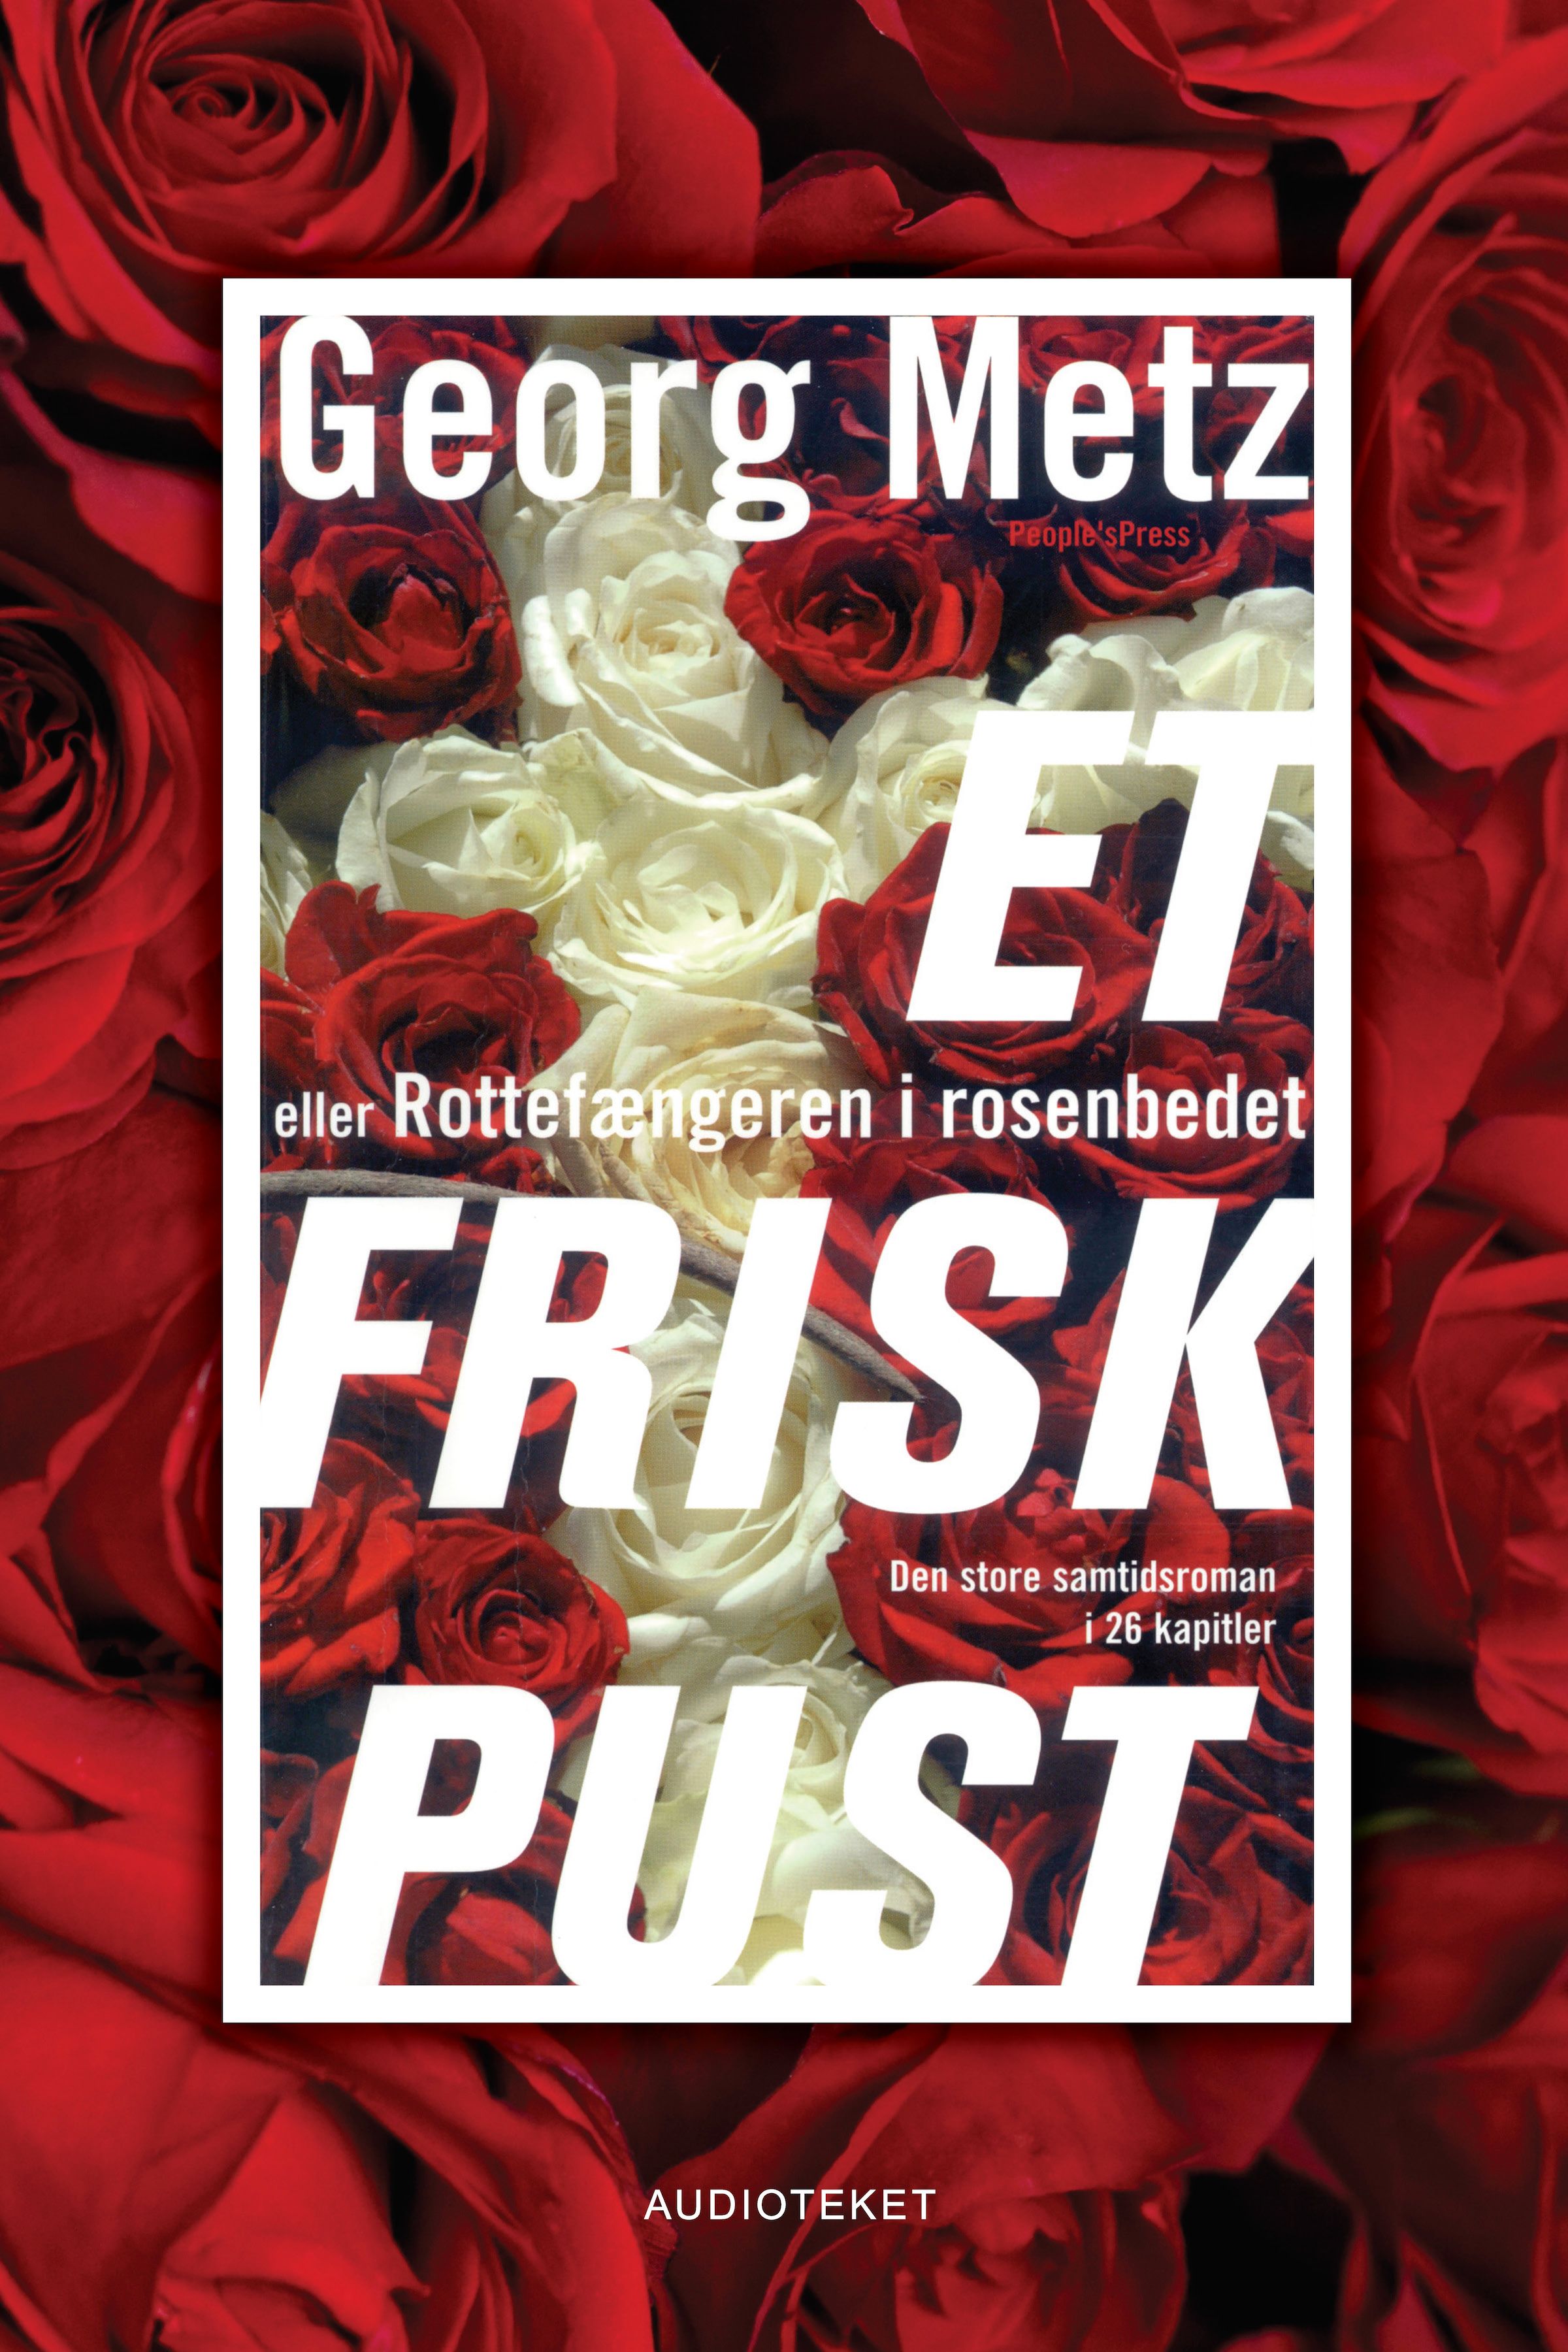 Et frisk pust - eller Rottefængeren i rosenbedet, ljudbok av Georg Metz